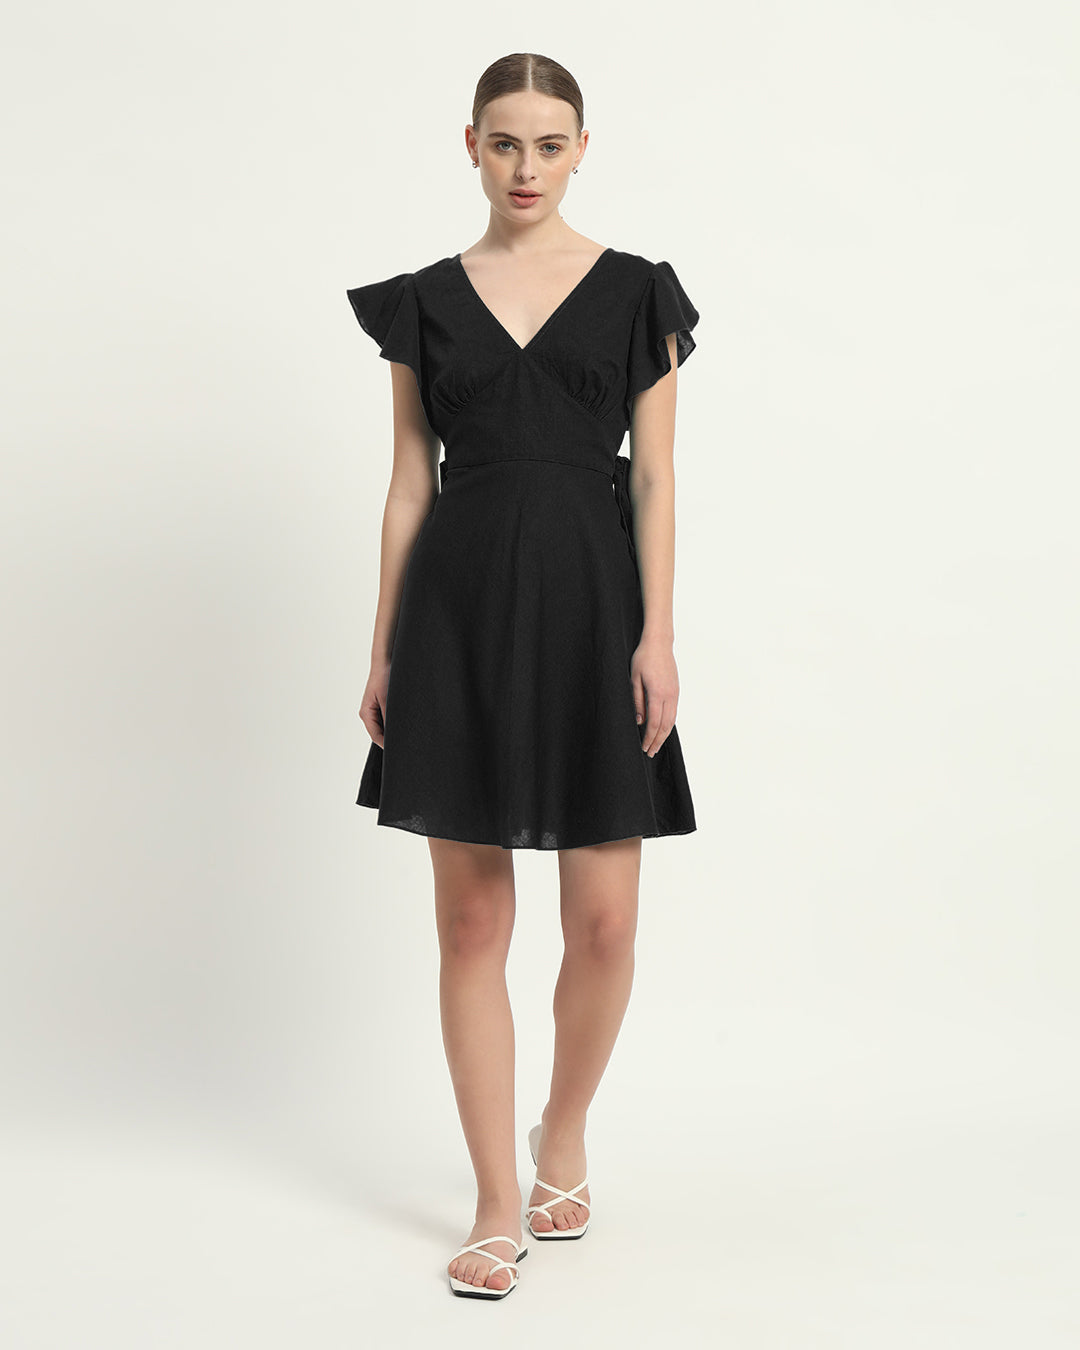 The Noir Fairlie Cotton Dress